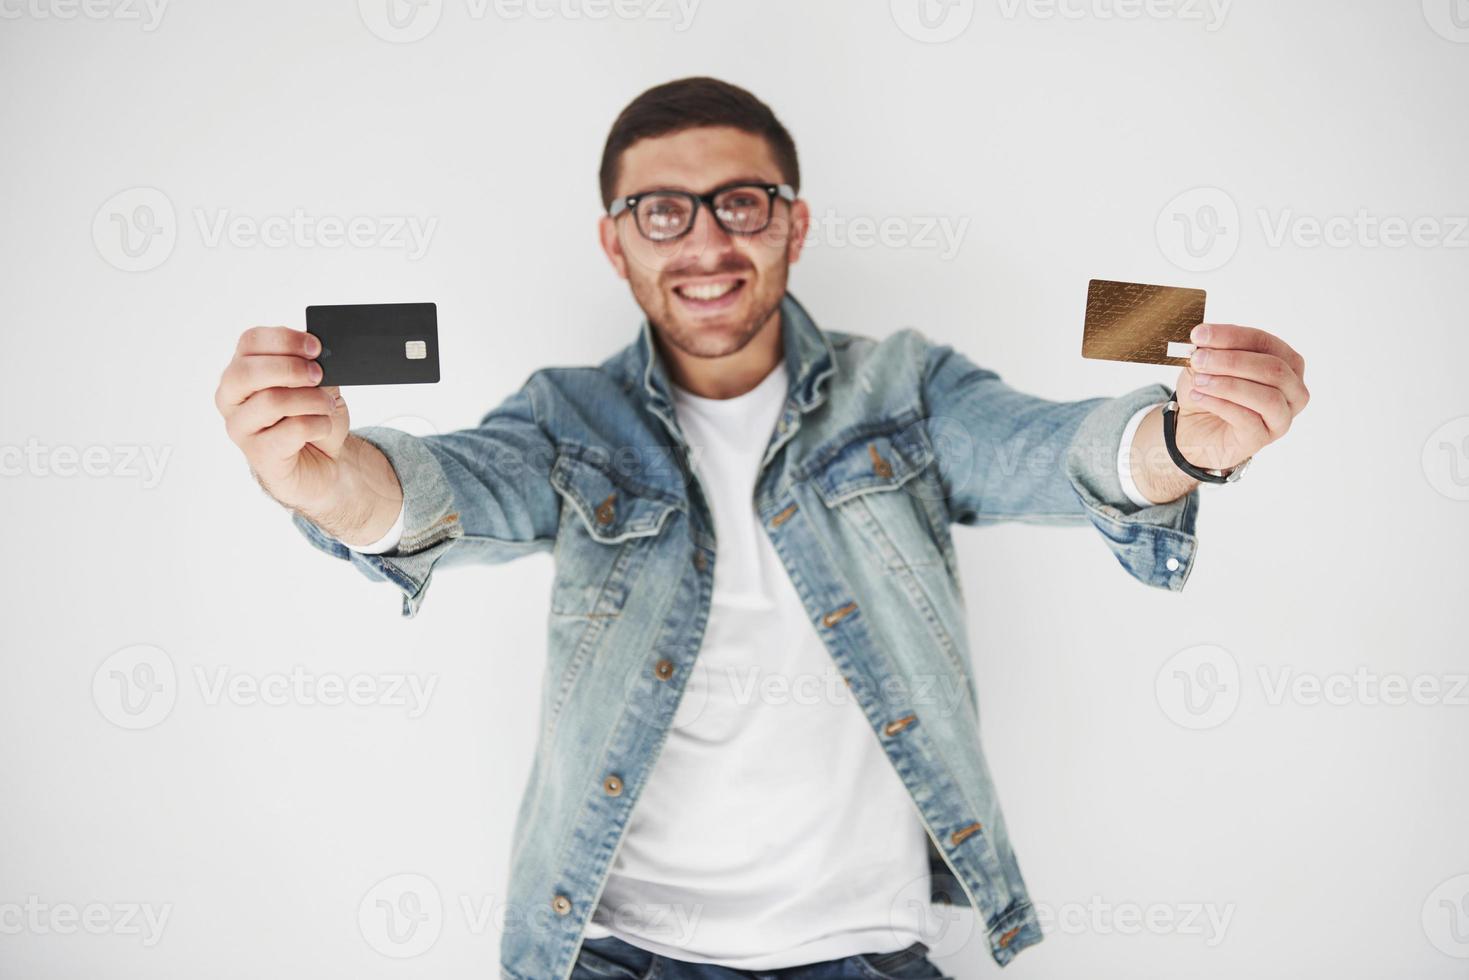 jovem bonito executivo masculino em traje casual, segurando um cartão de crédito nos bolsos em um fundo branco. o conceito de negociação na internet e a facilidade do dinheiro eletrônico foto